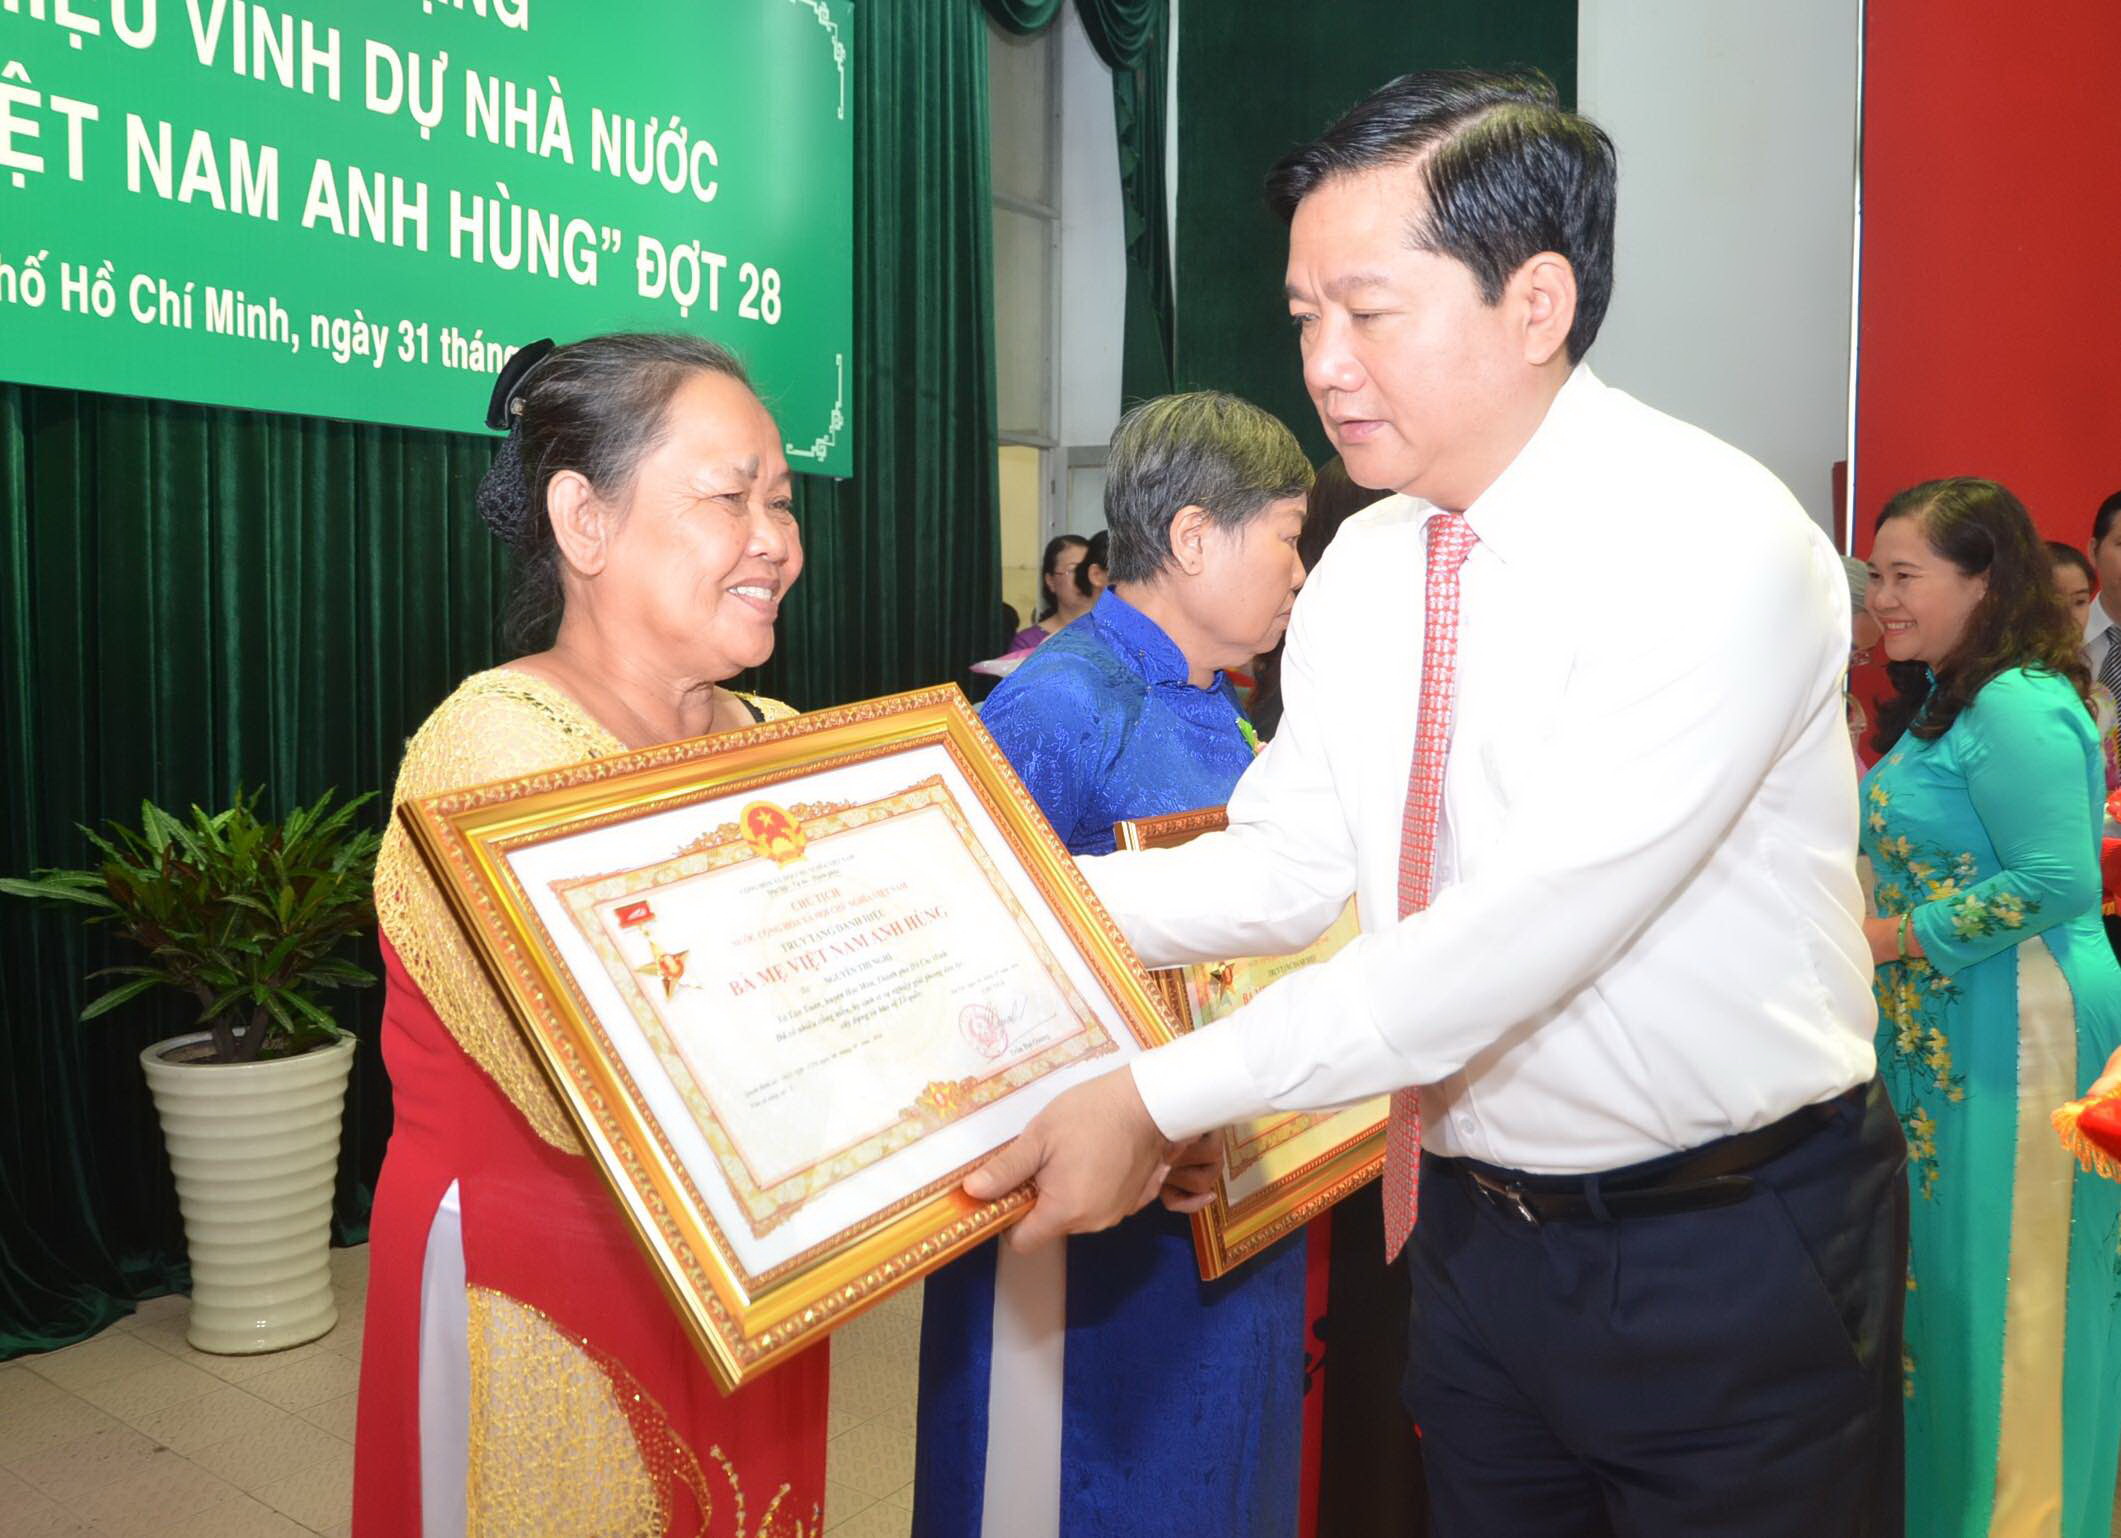 
Bí thư Thành ủy TP HCM Đinh La Thăng trao danh hiệu Bà mẹ Việt Nam anh hùng cho đại diện gia đình các Mẹ được truy tặng đợt 28.
